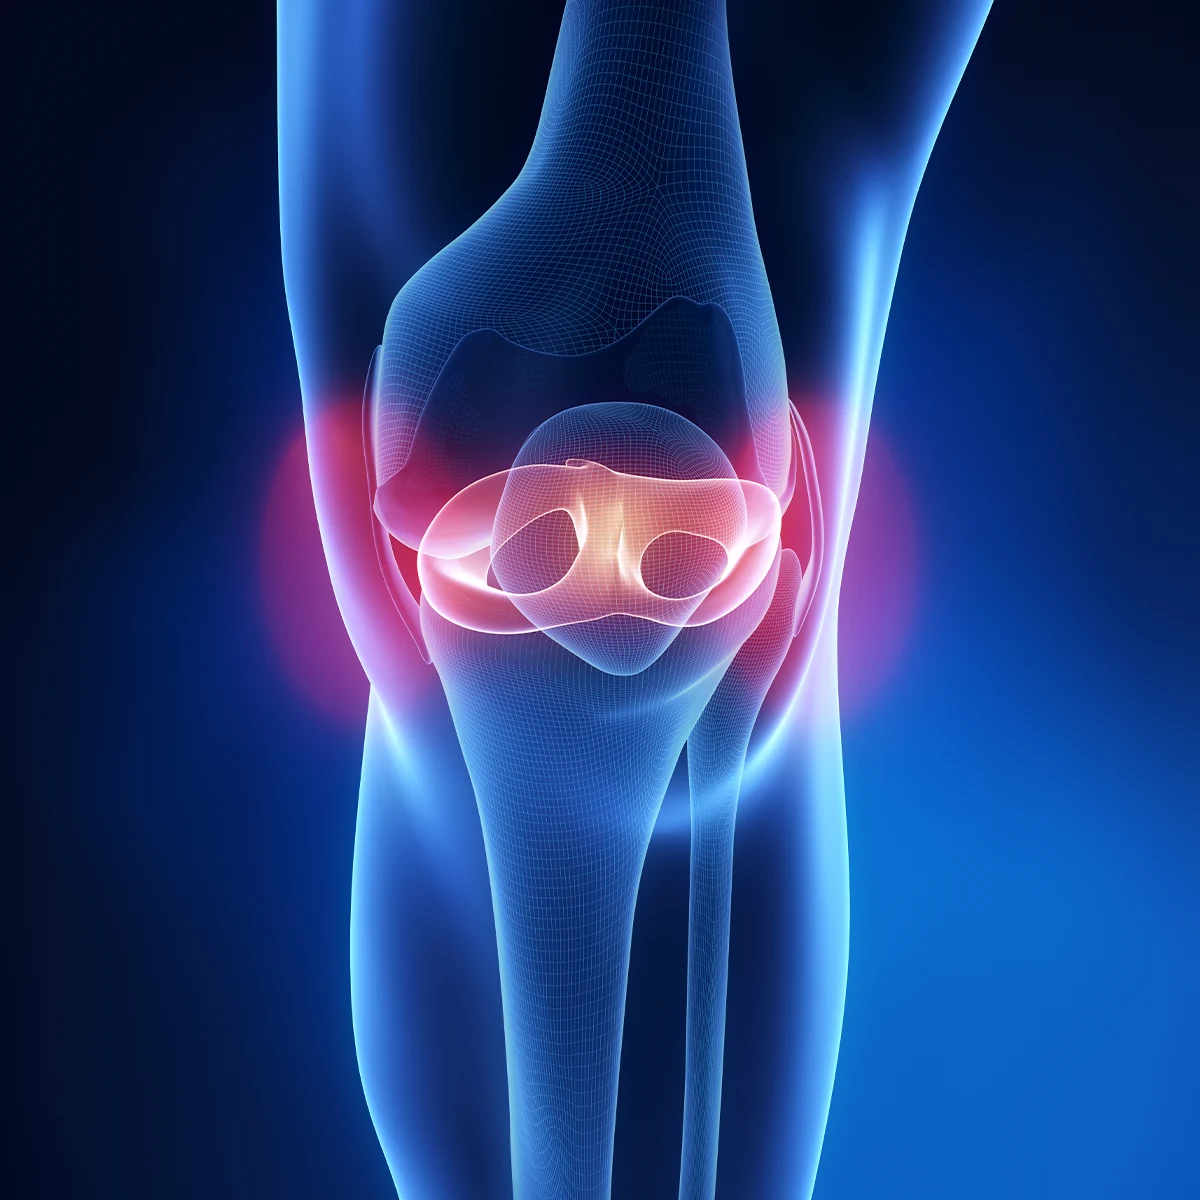 meniscus tear and repair kenya